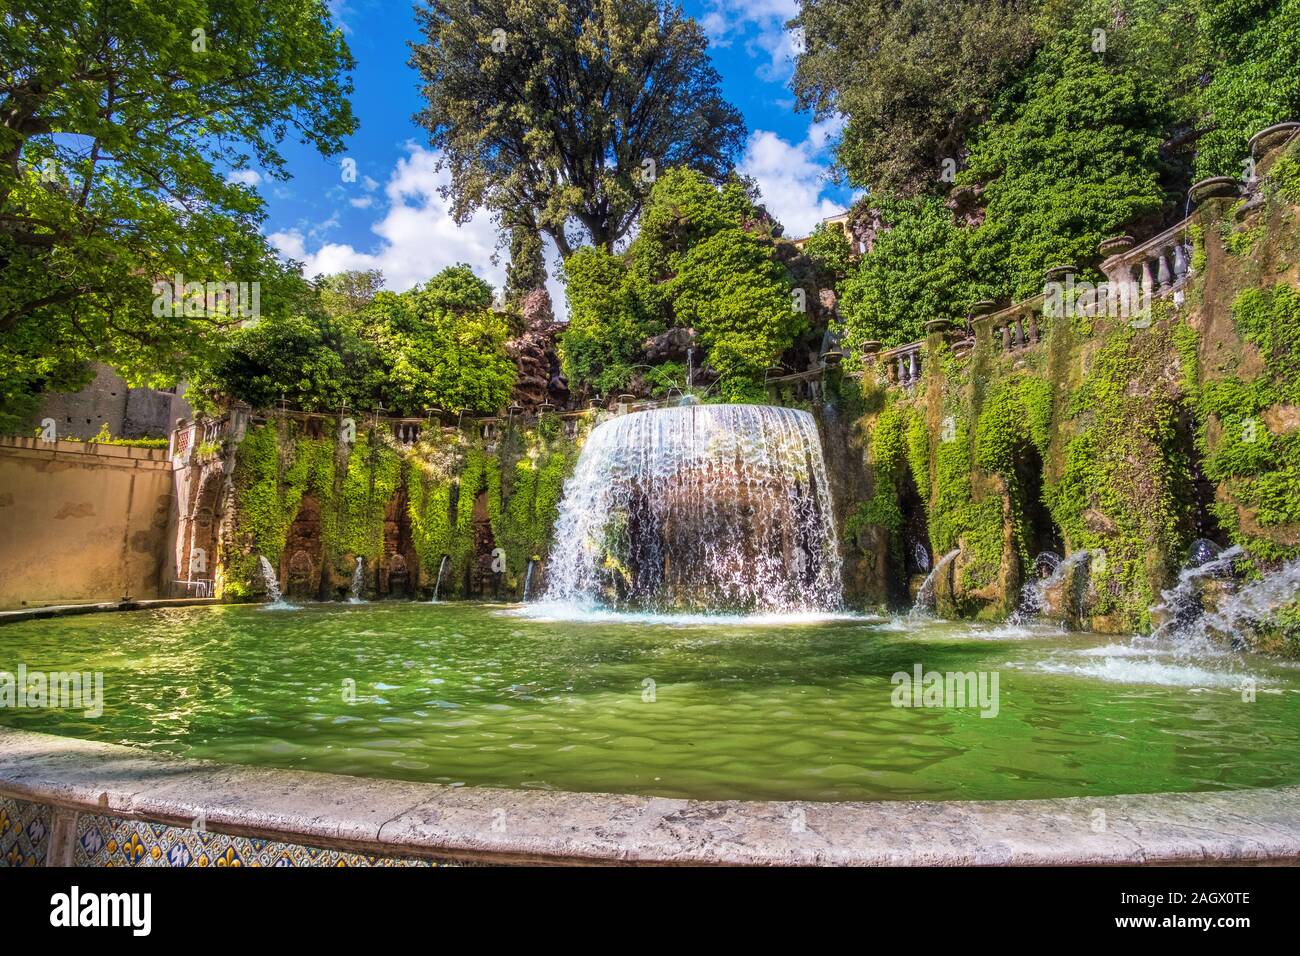 Lazio region landmarks - Villa D Este gardens - Oval Fountain or Fontana del Ovato in Tivoli near Rome - Italy Stock Photo